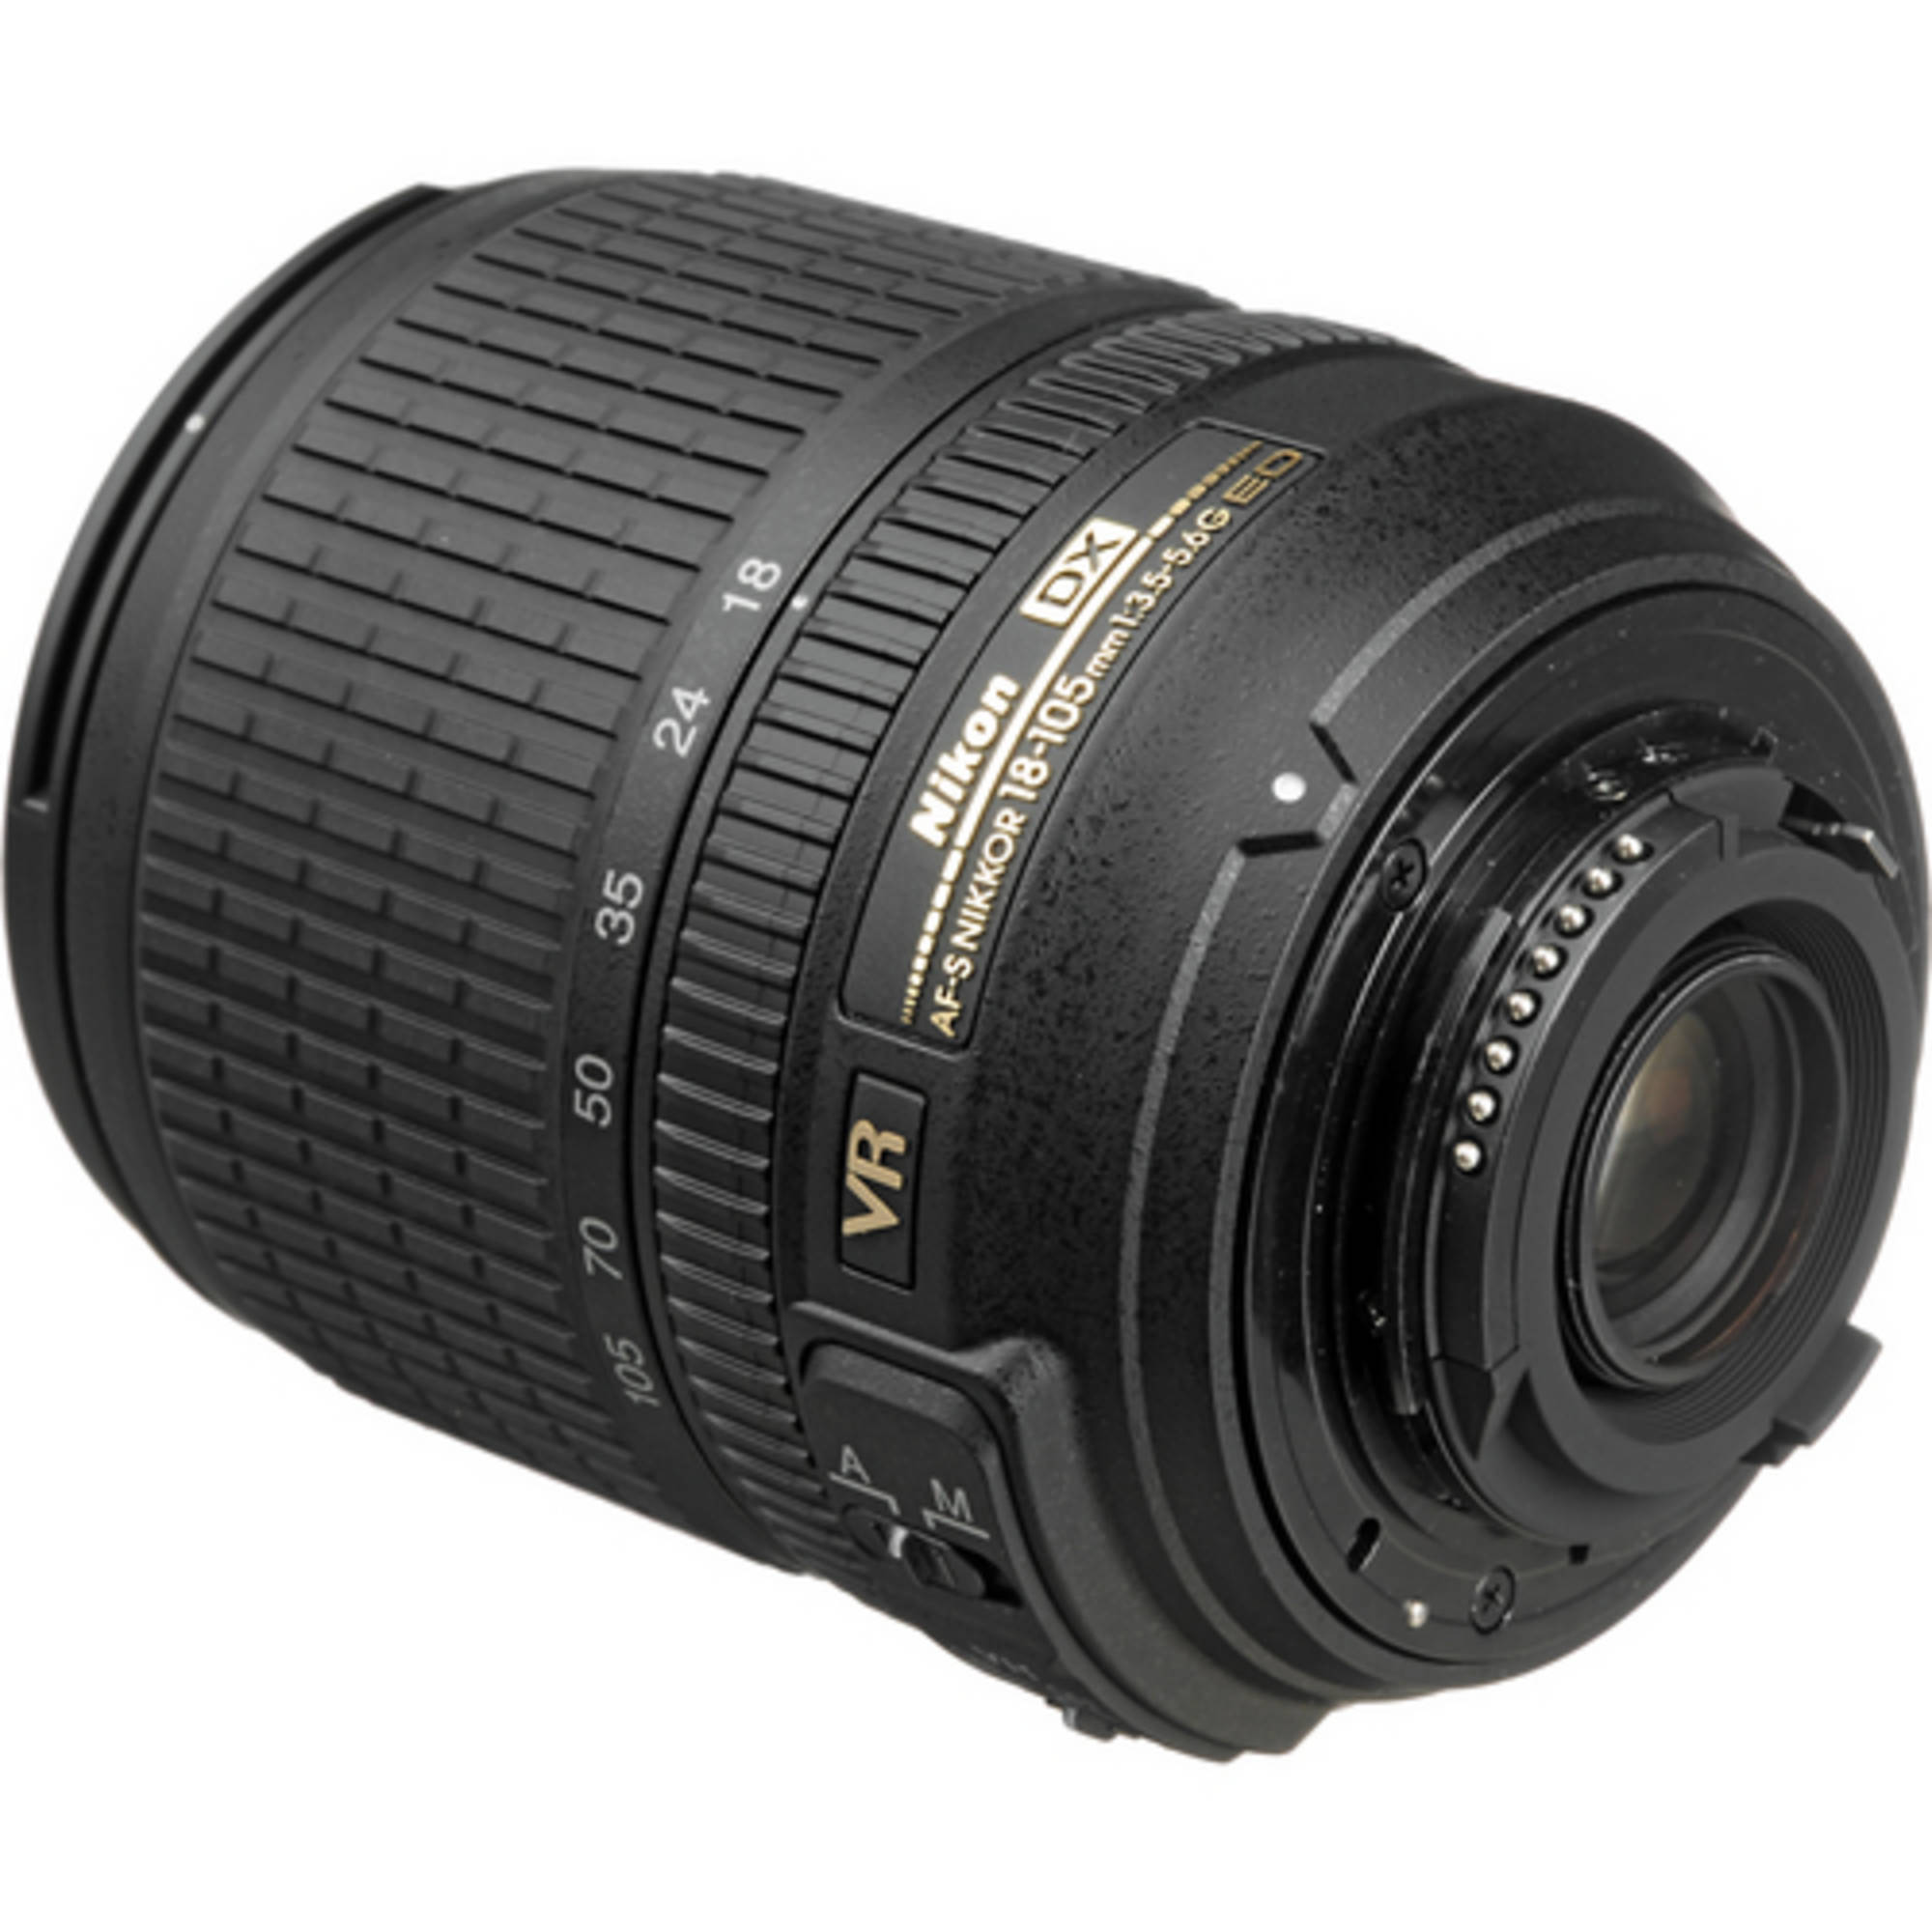 Ống kính Nikon AF-S DX NIKKOR 18-105mm f/3.5-5.6G ED VR Chính Hãng